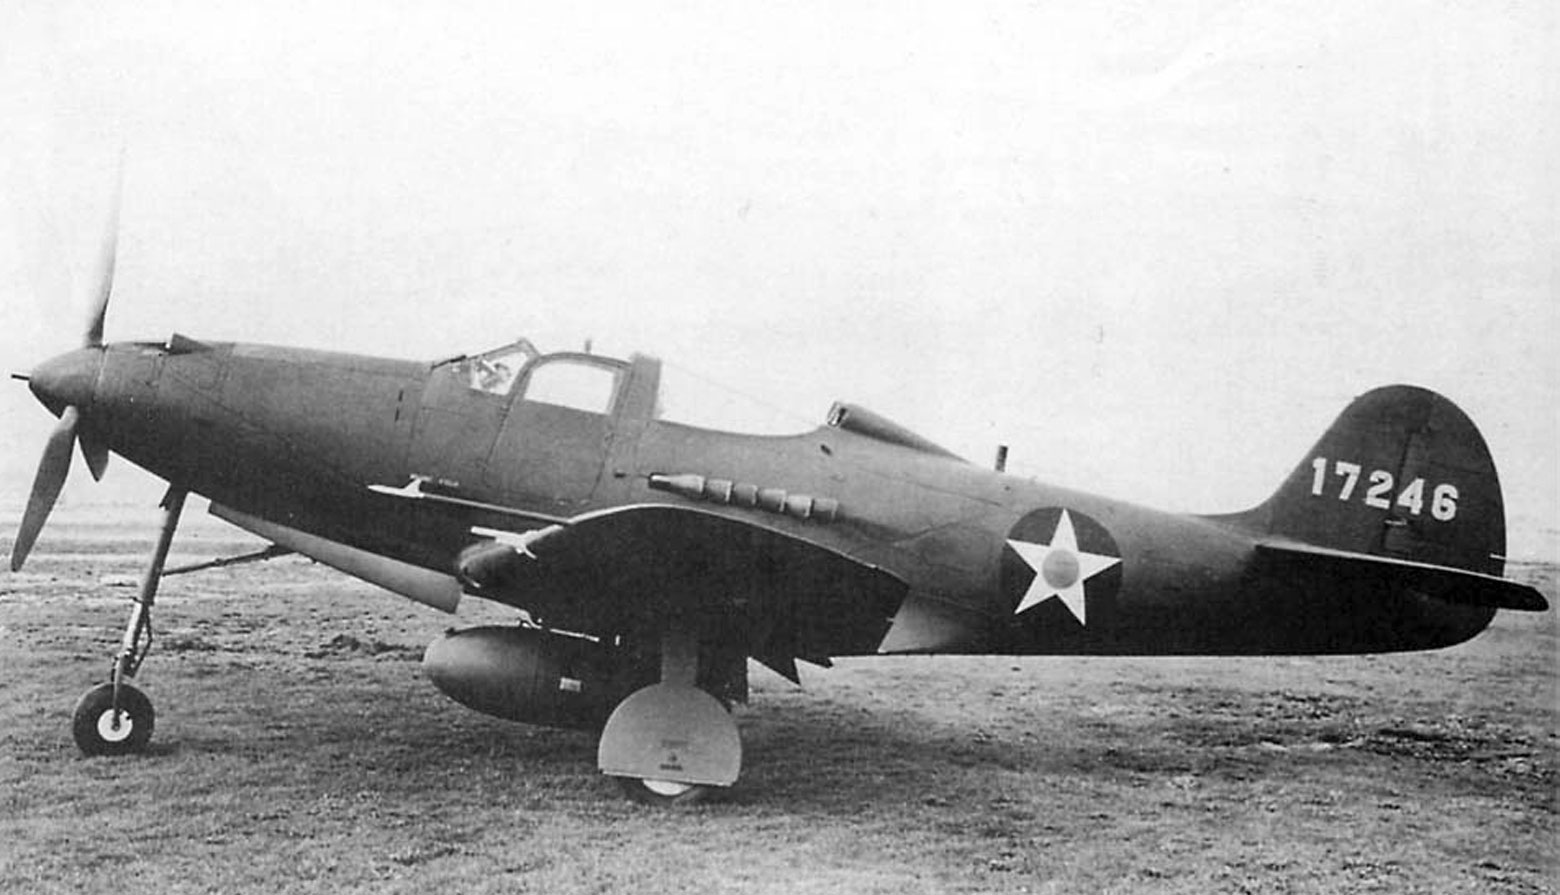 Bell P-39F s/n 41-7246, вид сбоку